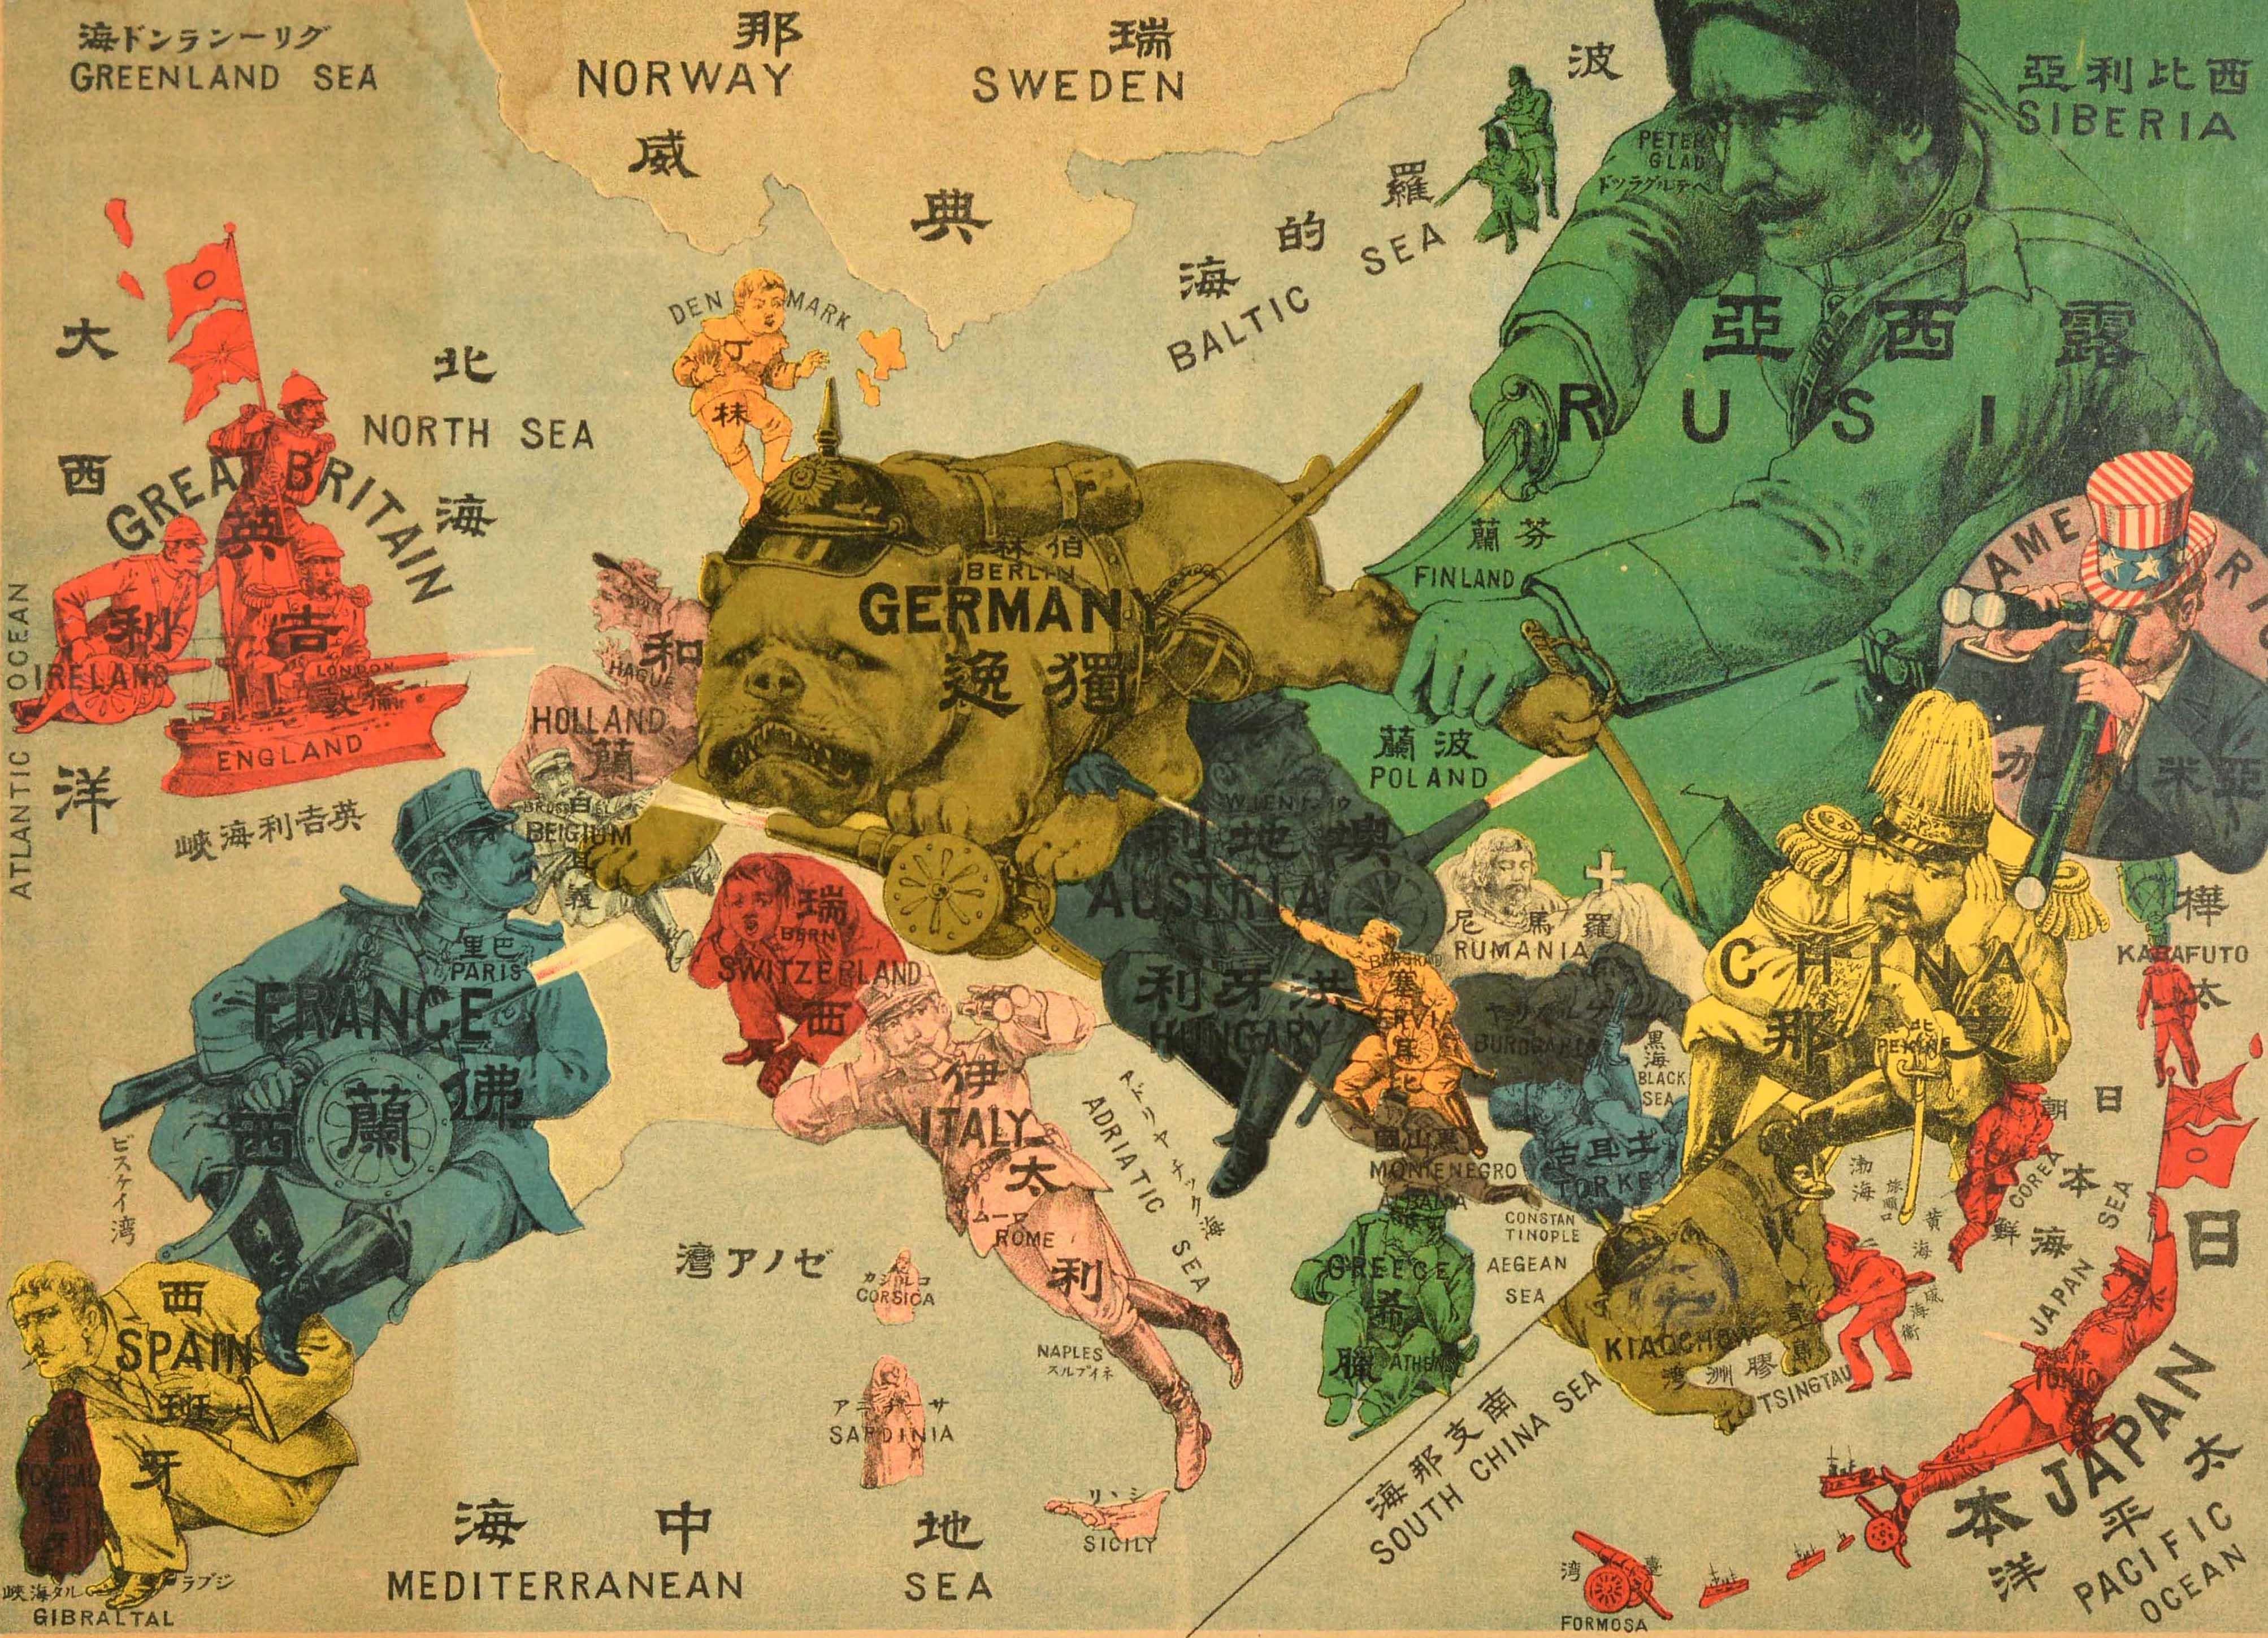 Originale antike satirische Karte von Europa und Asien zum Ausbruch des Ersten Weltkriegs mit bunten Karikaturen und Illustrationen der Länder, darunter Deutschland als Bulldogge mit Stachelhelm, die Belgien mit ihrer Pfote erdrückt, Großbritannien